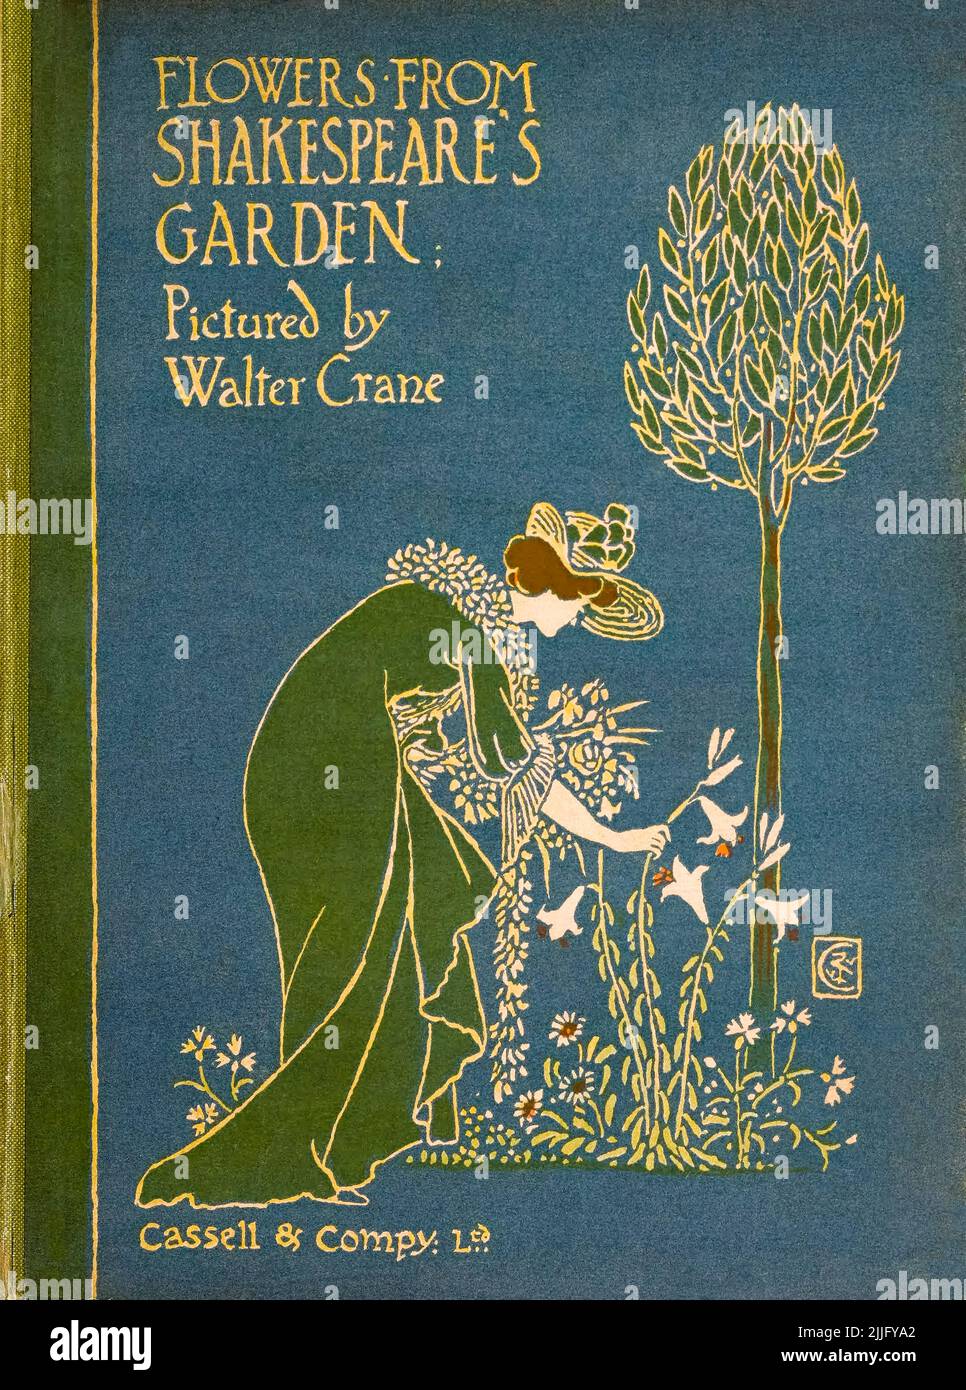 Flores del jardín de Shakespeare, una postiza de las obras de teatro, ilustración del diseño de la portada de un libro por Walter Crane, 1909 Foto de stock